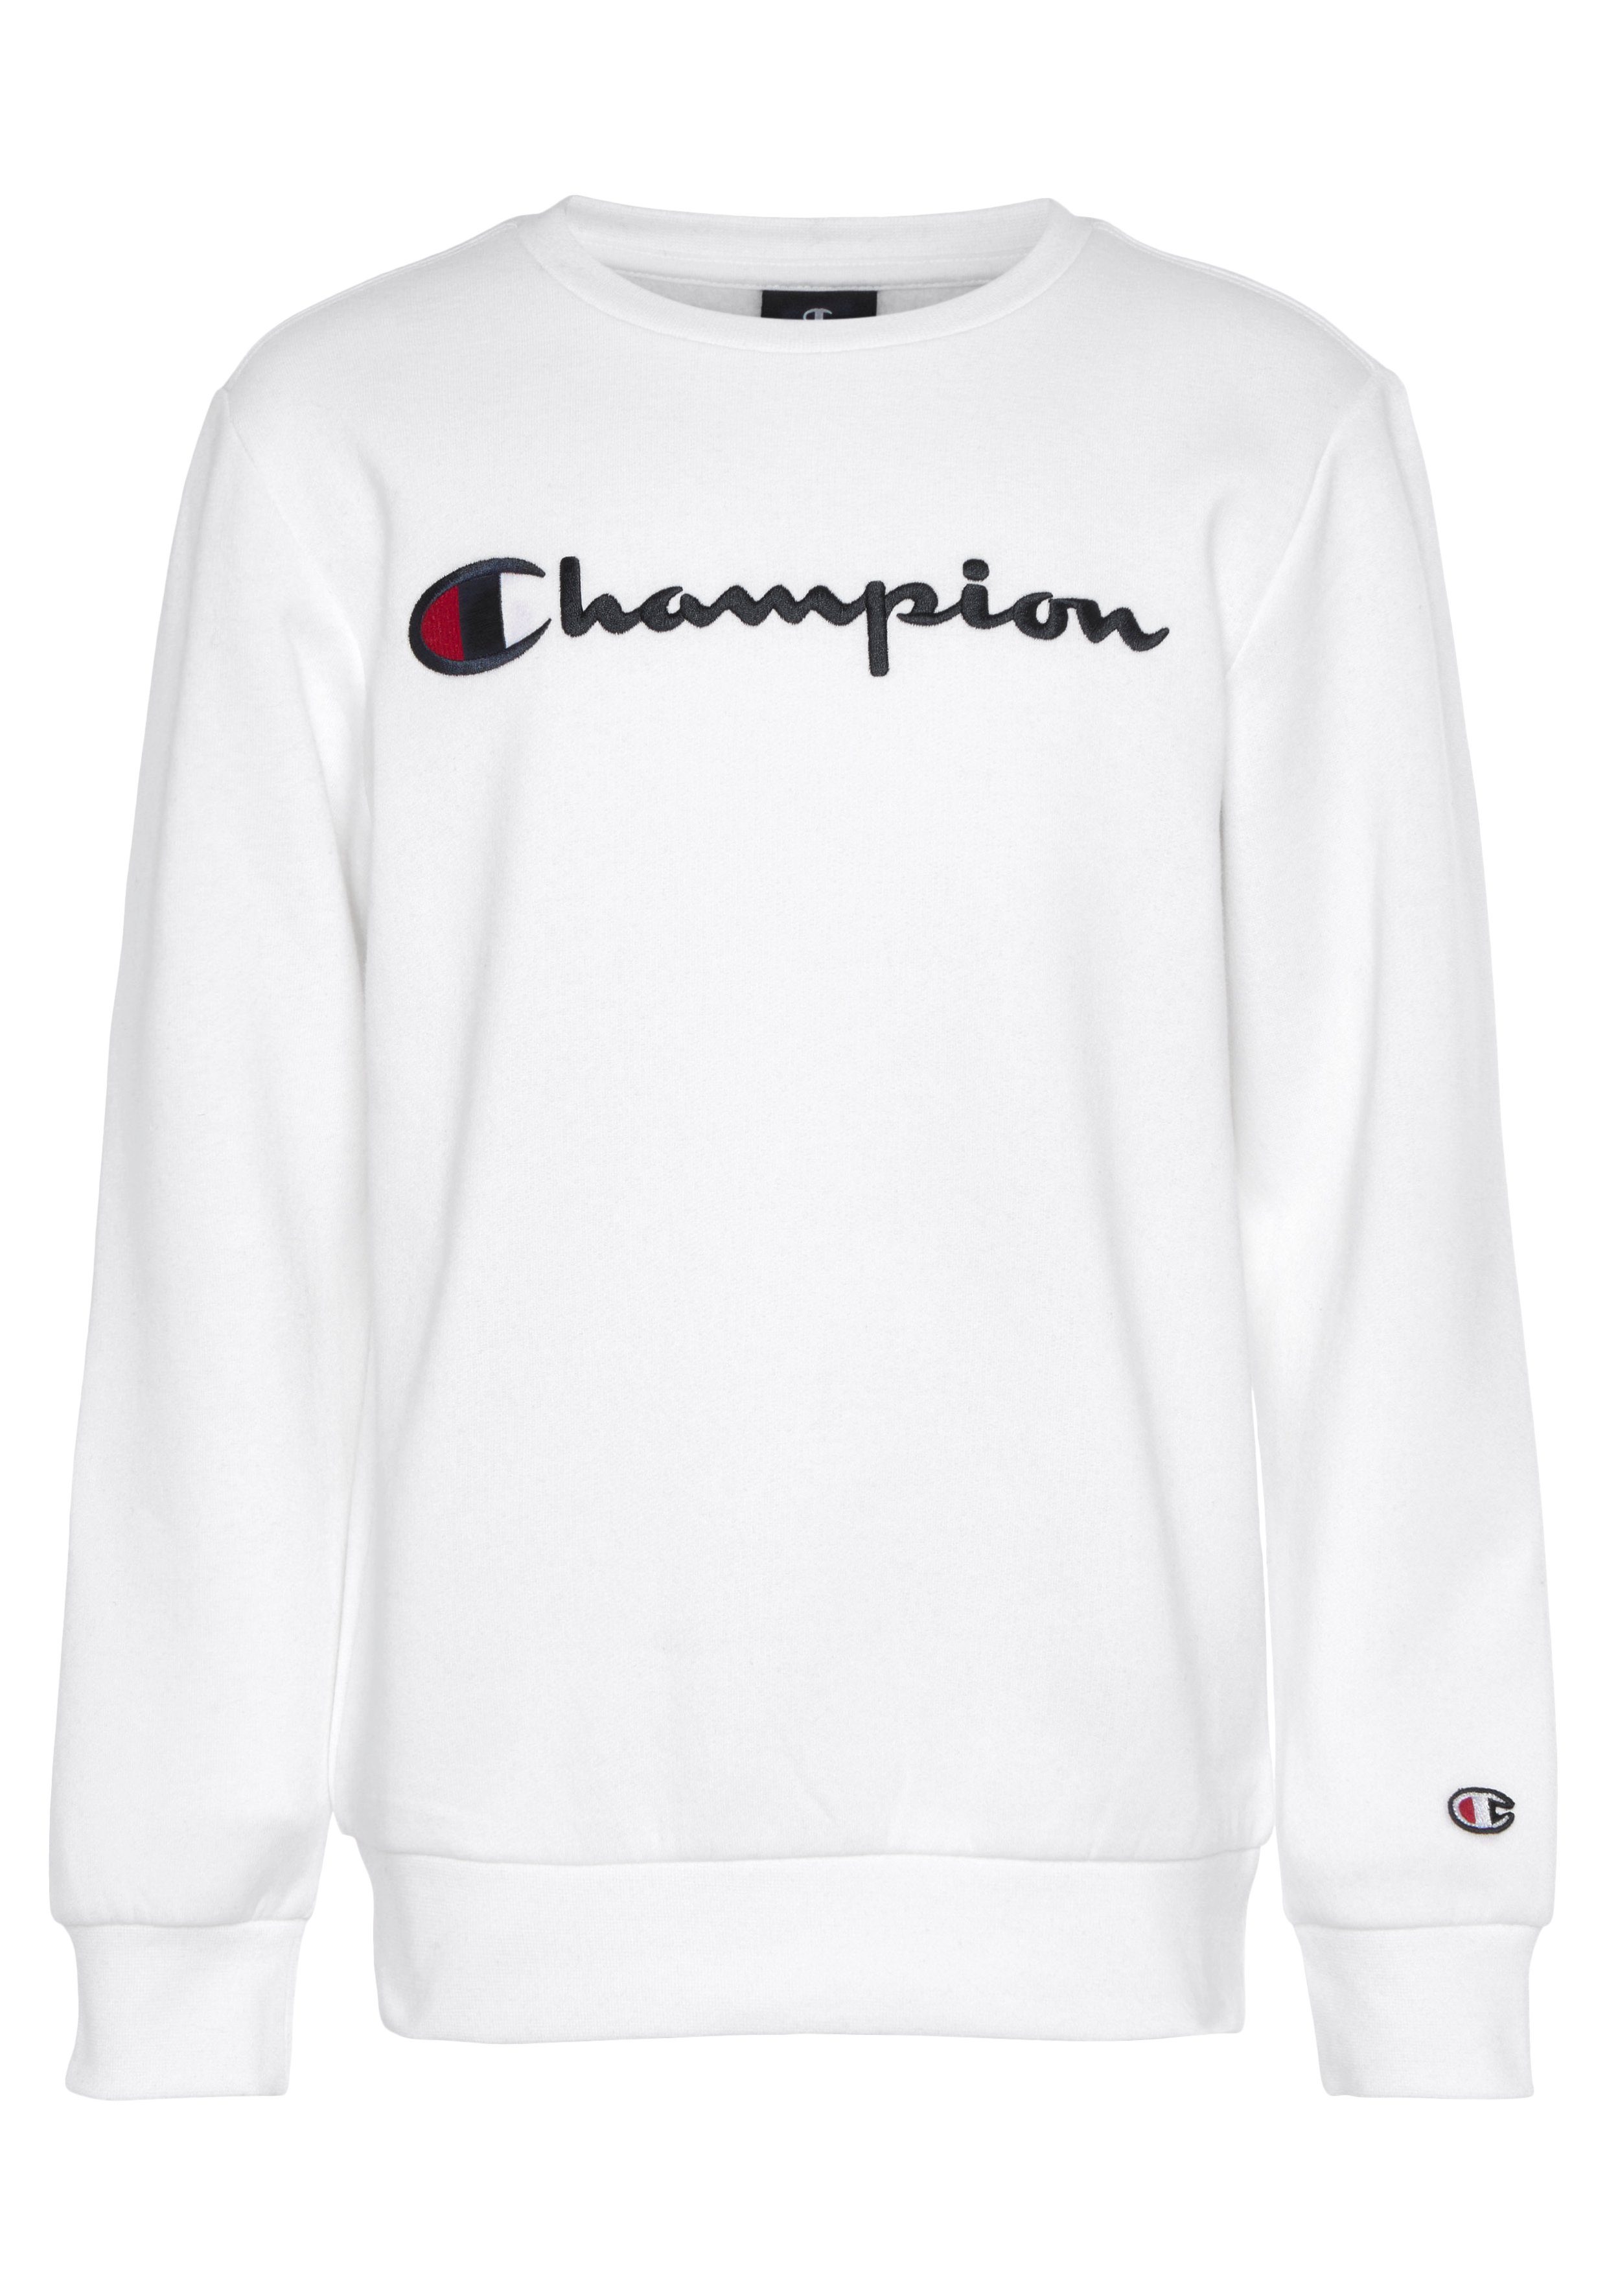 Sweatshirt Kinder Classic Crewneck Sweatshirt für large Logo - Champion weiß